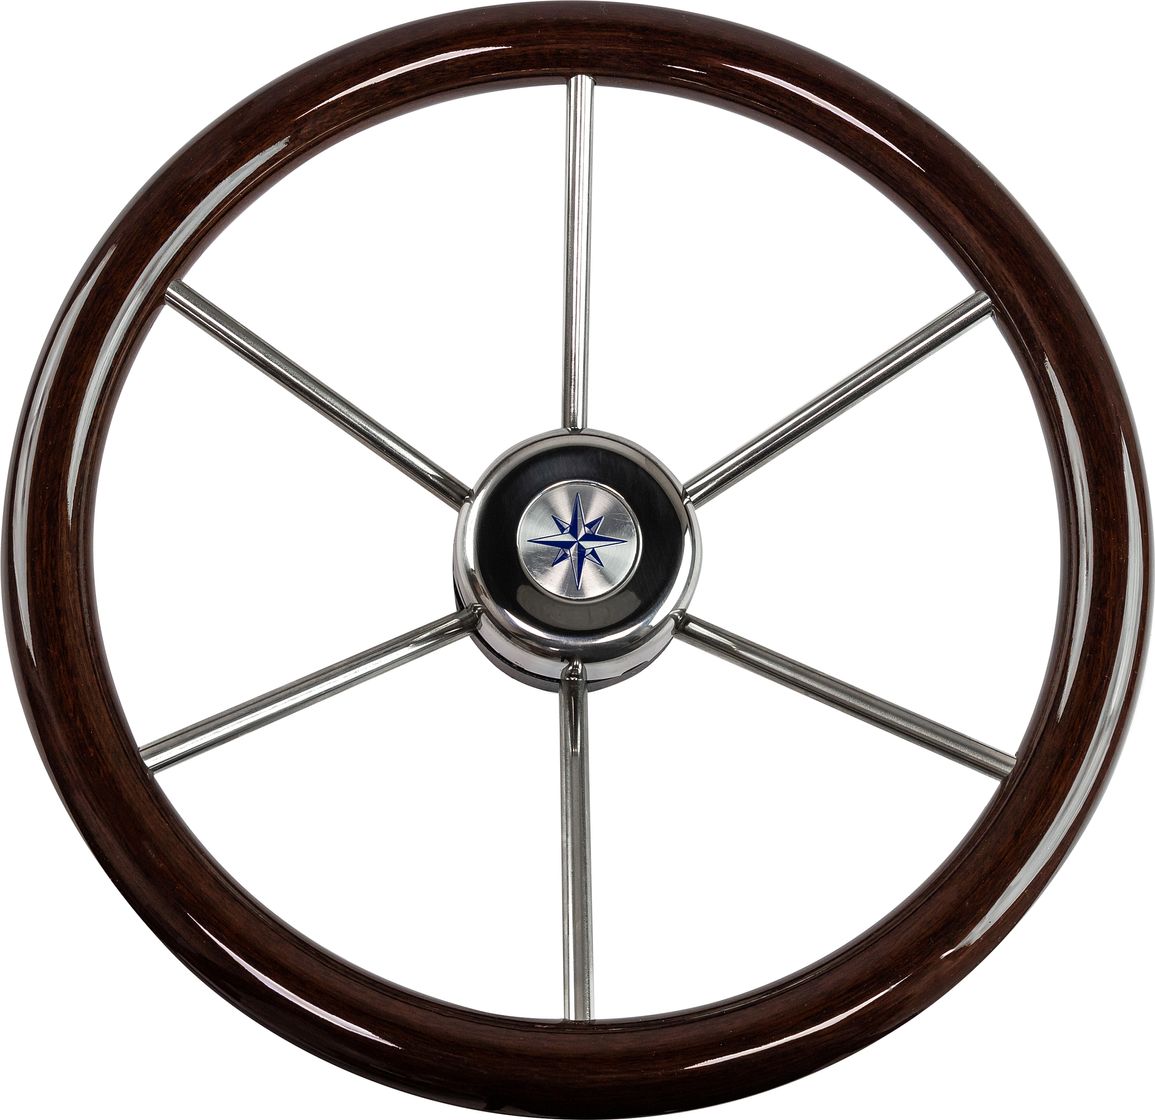 Рулевое колесо LEADER WOOD деревянный обод серебряные спицы д. 390 мм VN7390-33 пильный диск по дереву bosch eco wood 2 608 644 377 148t диаметр 190 мм посадочный 30 мм толщина 1 4 мм